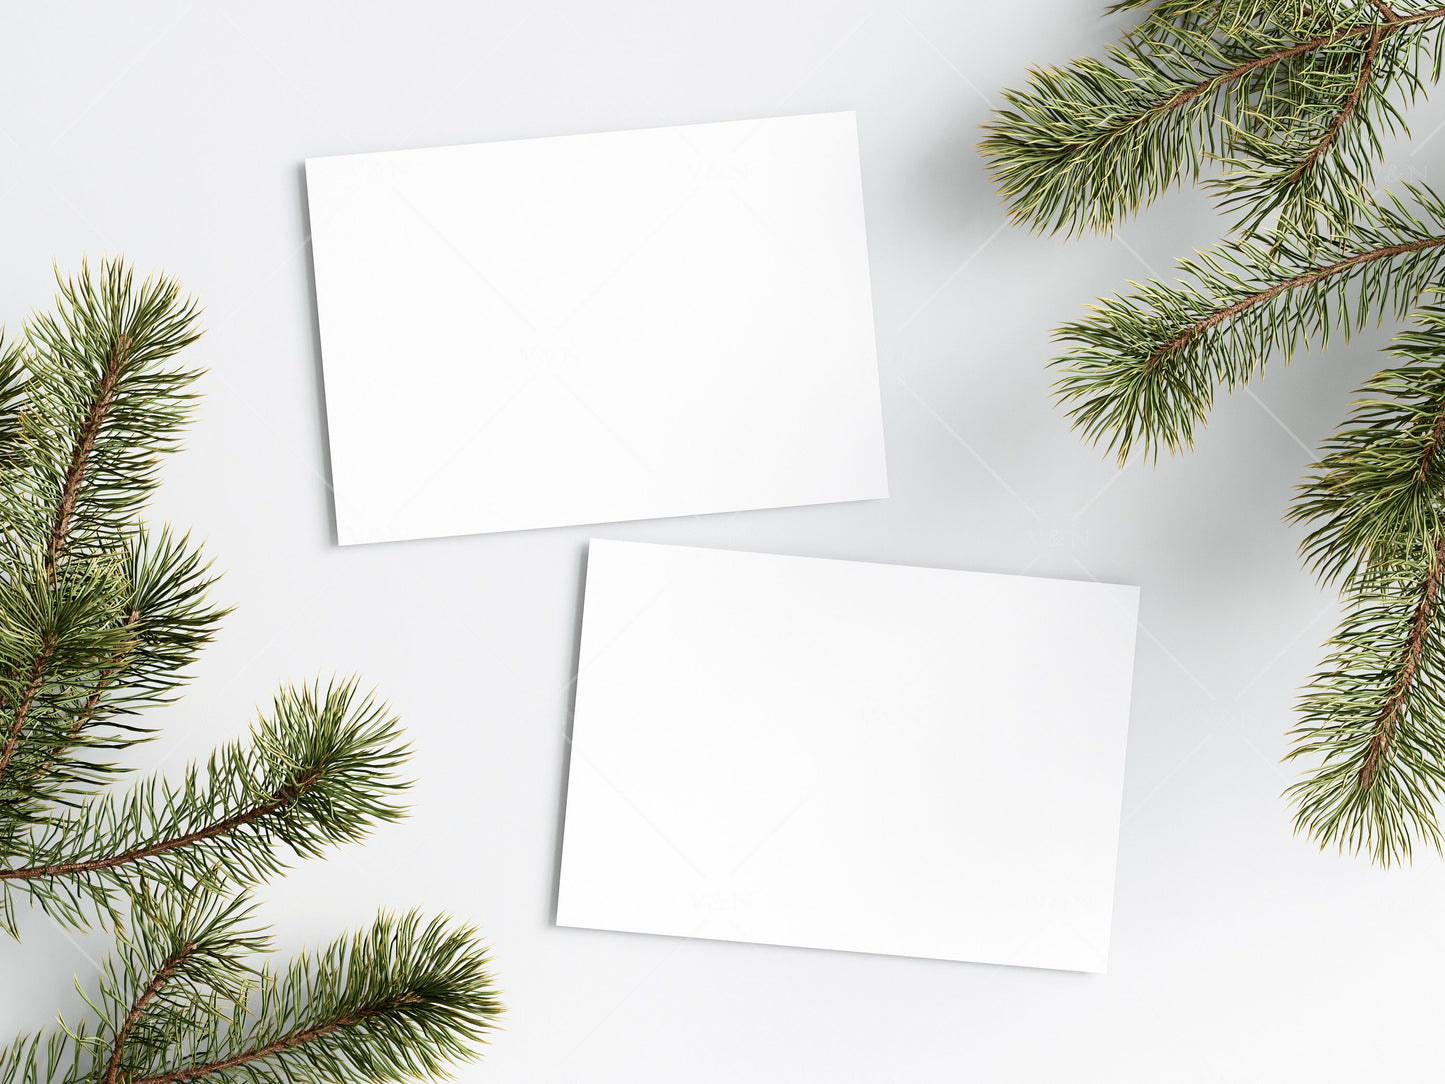 Two Horizontal Christmas Card Mockup 5x7, Mockup Christmas Card, Invitation Mockup, Greeting Card Mockup